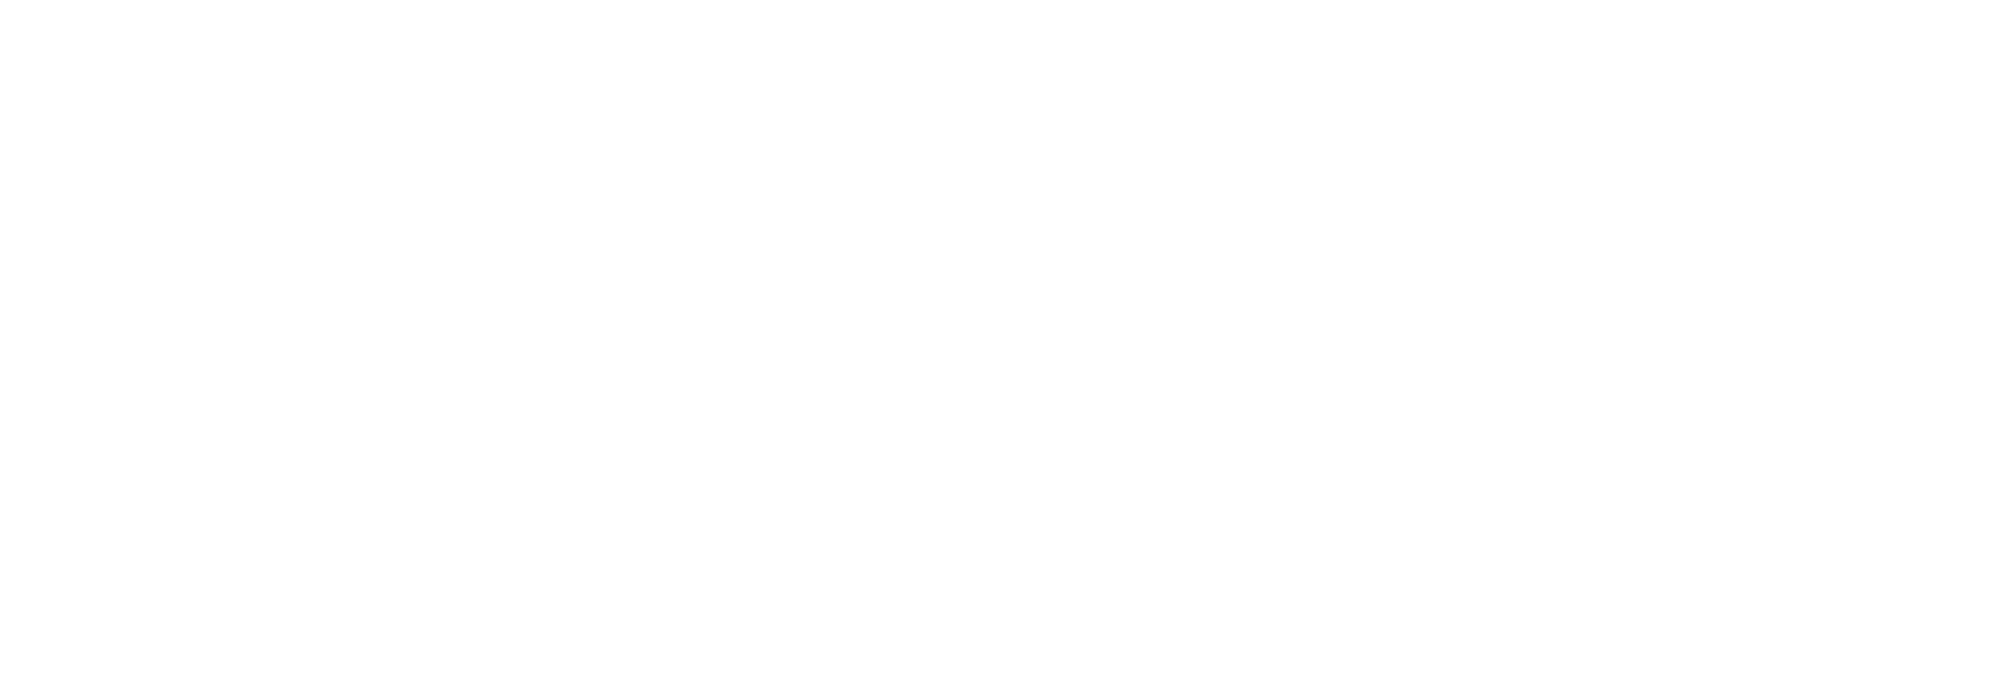 Uber Logo White